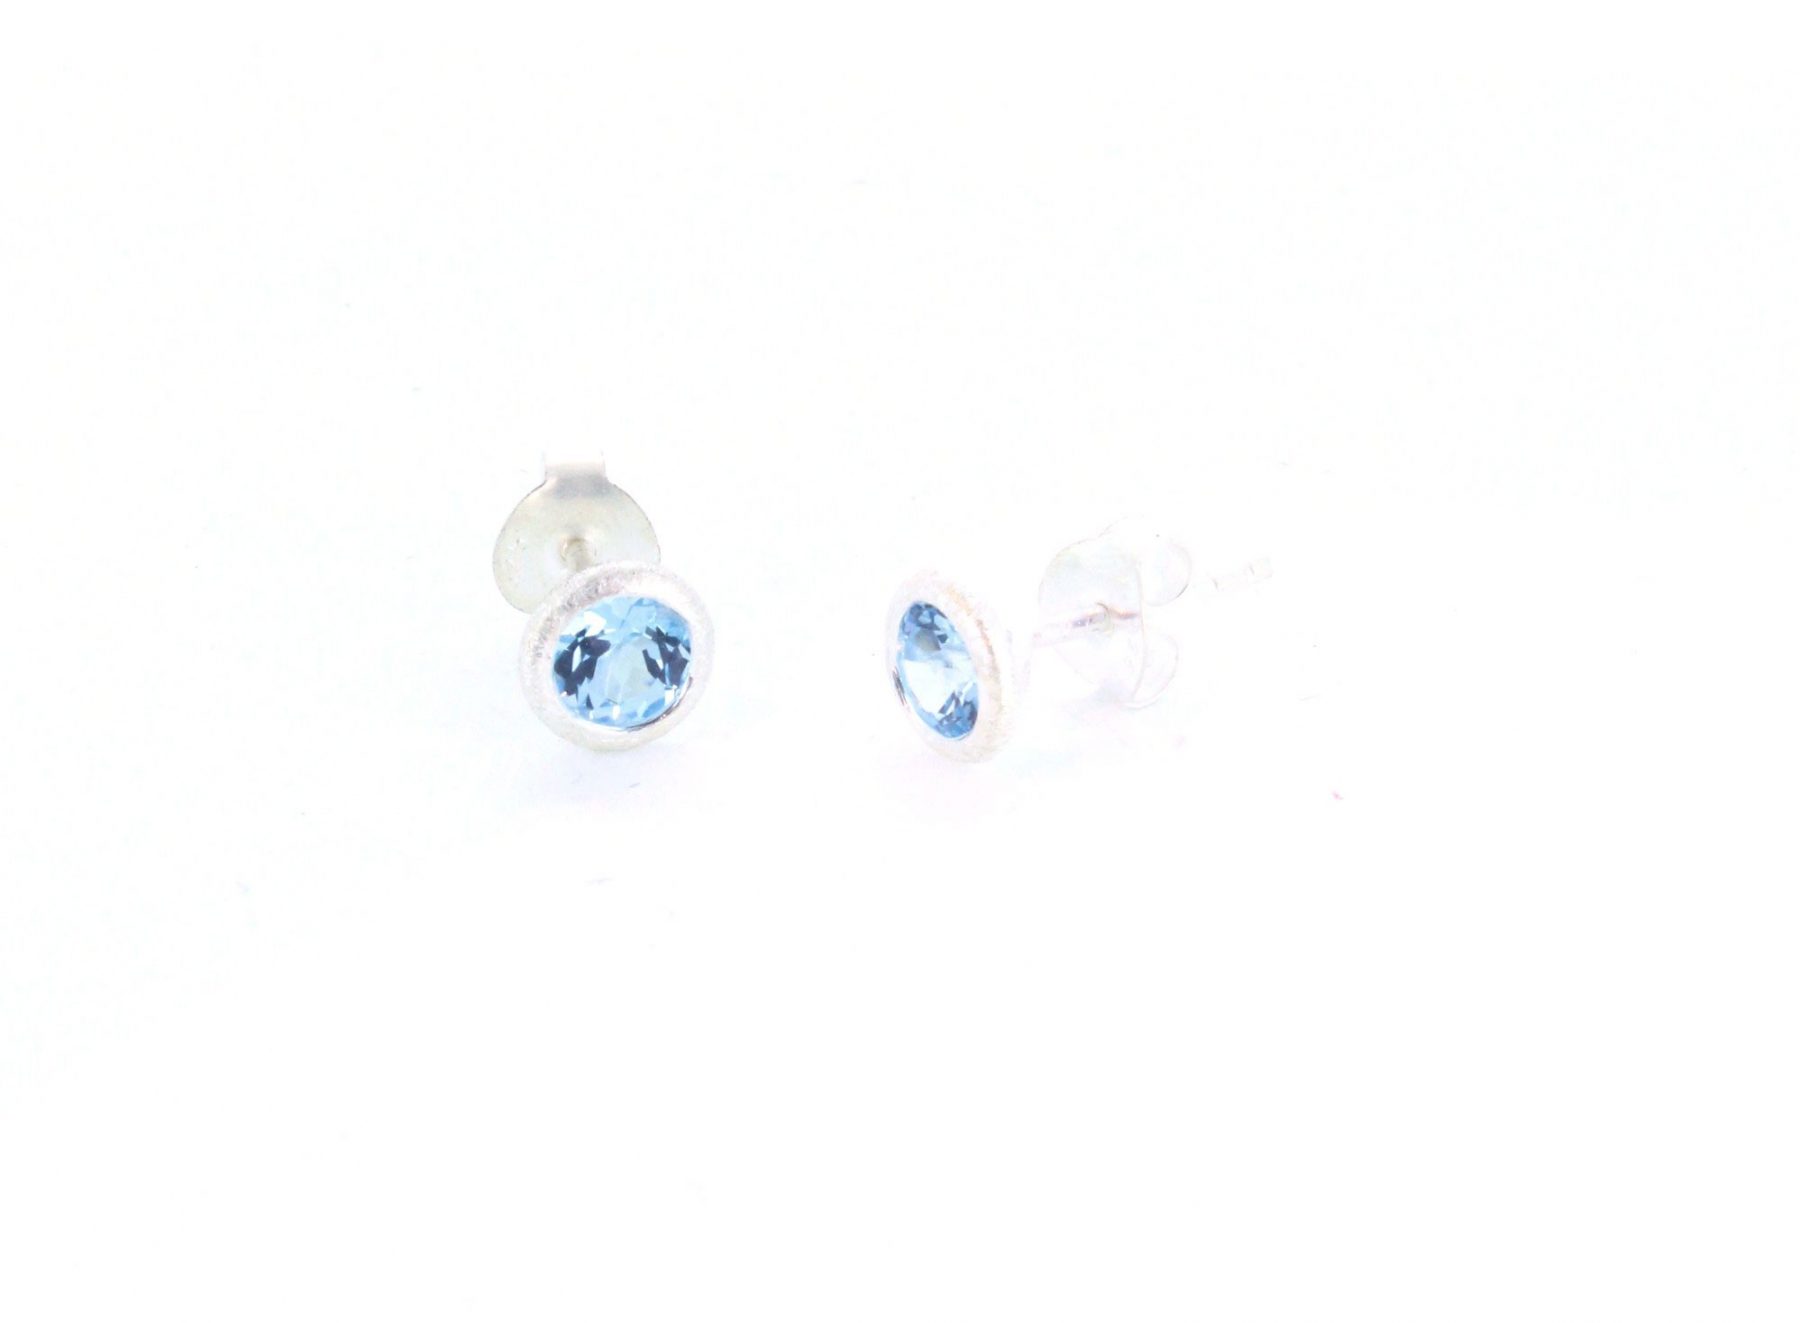 Ohrstecker Topas blau Silber - Individuelle Marken - A009-5BT